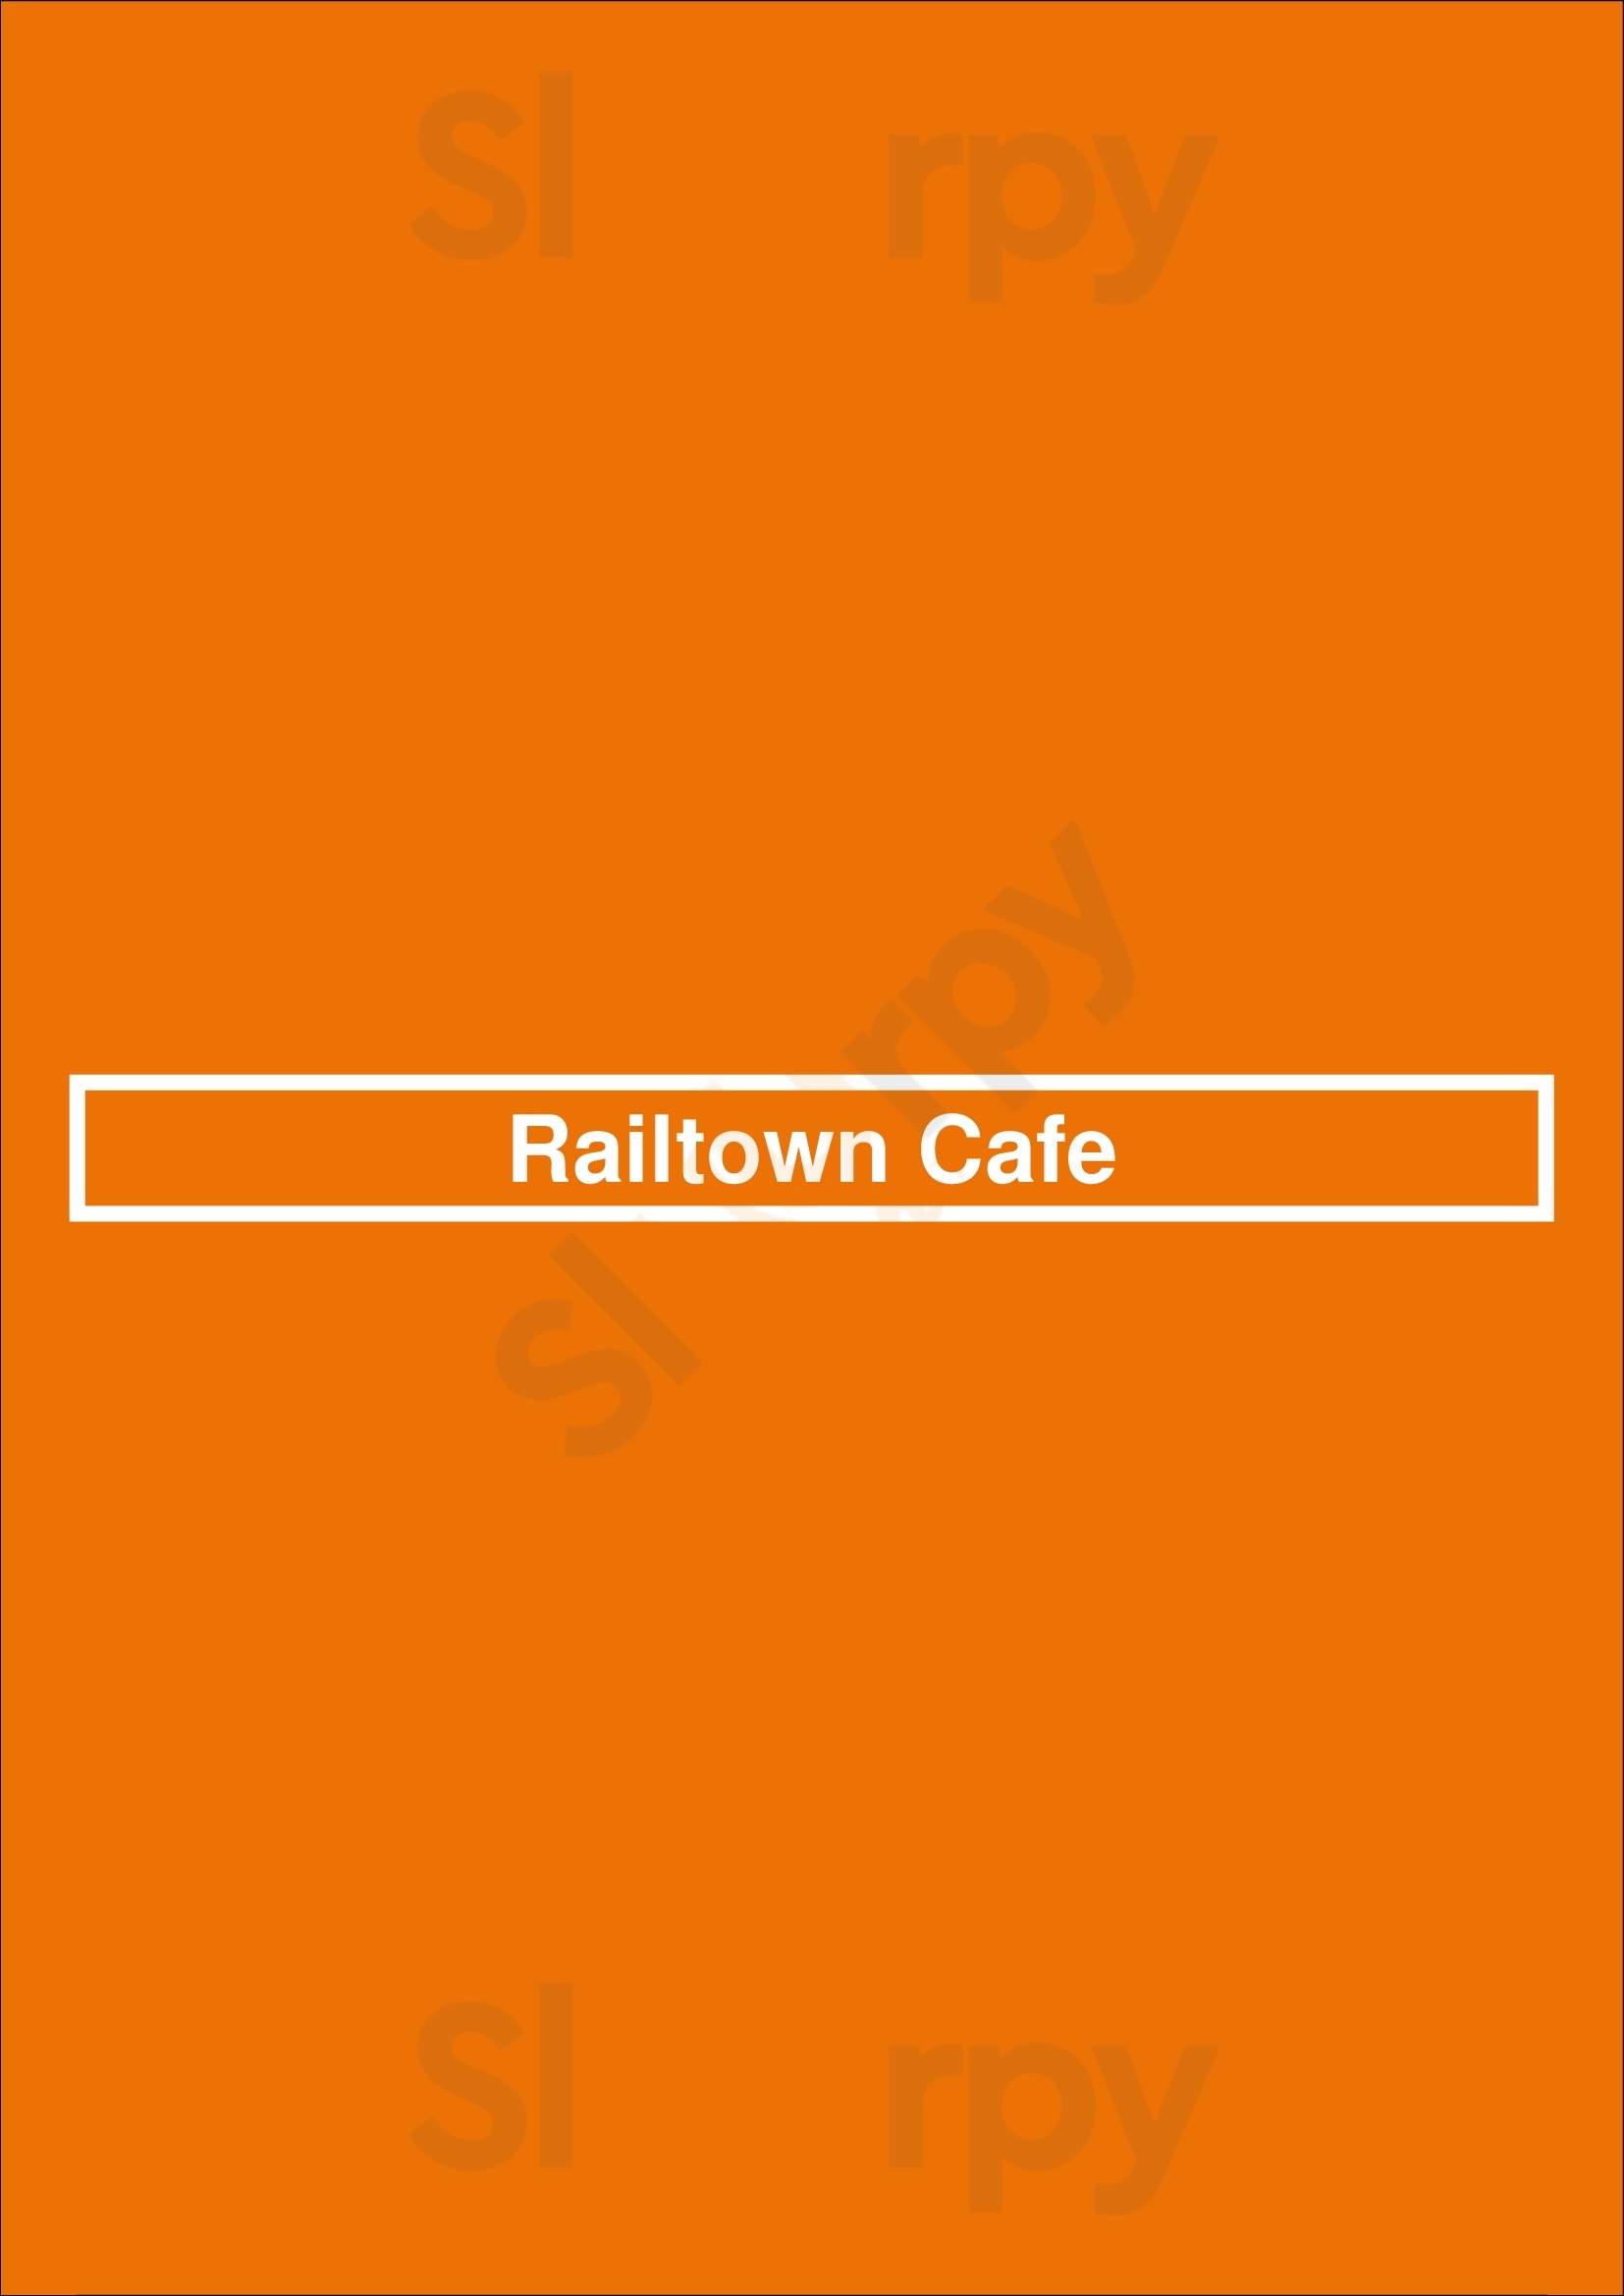 Railtown Cafe Vancouver Menu - 1